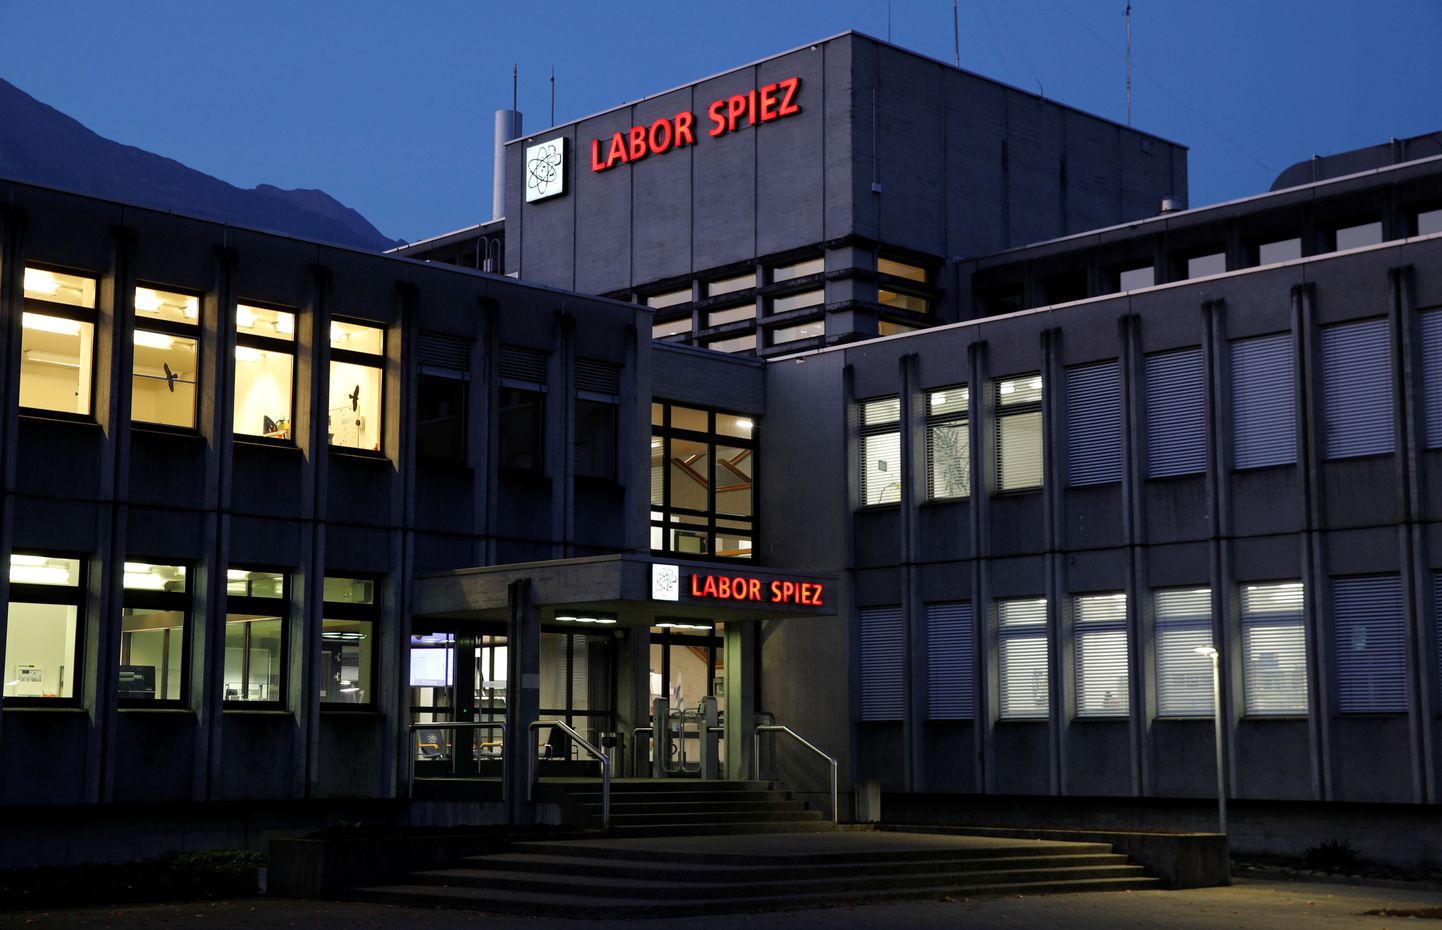 Spiezi labor Bernis, mida Vene luurajad püüdsid Šveitsi väitle rünnata.